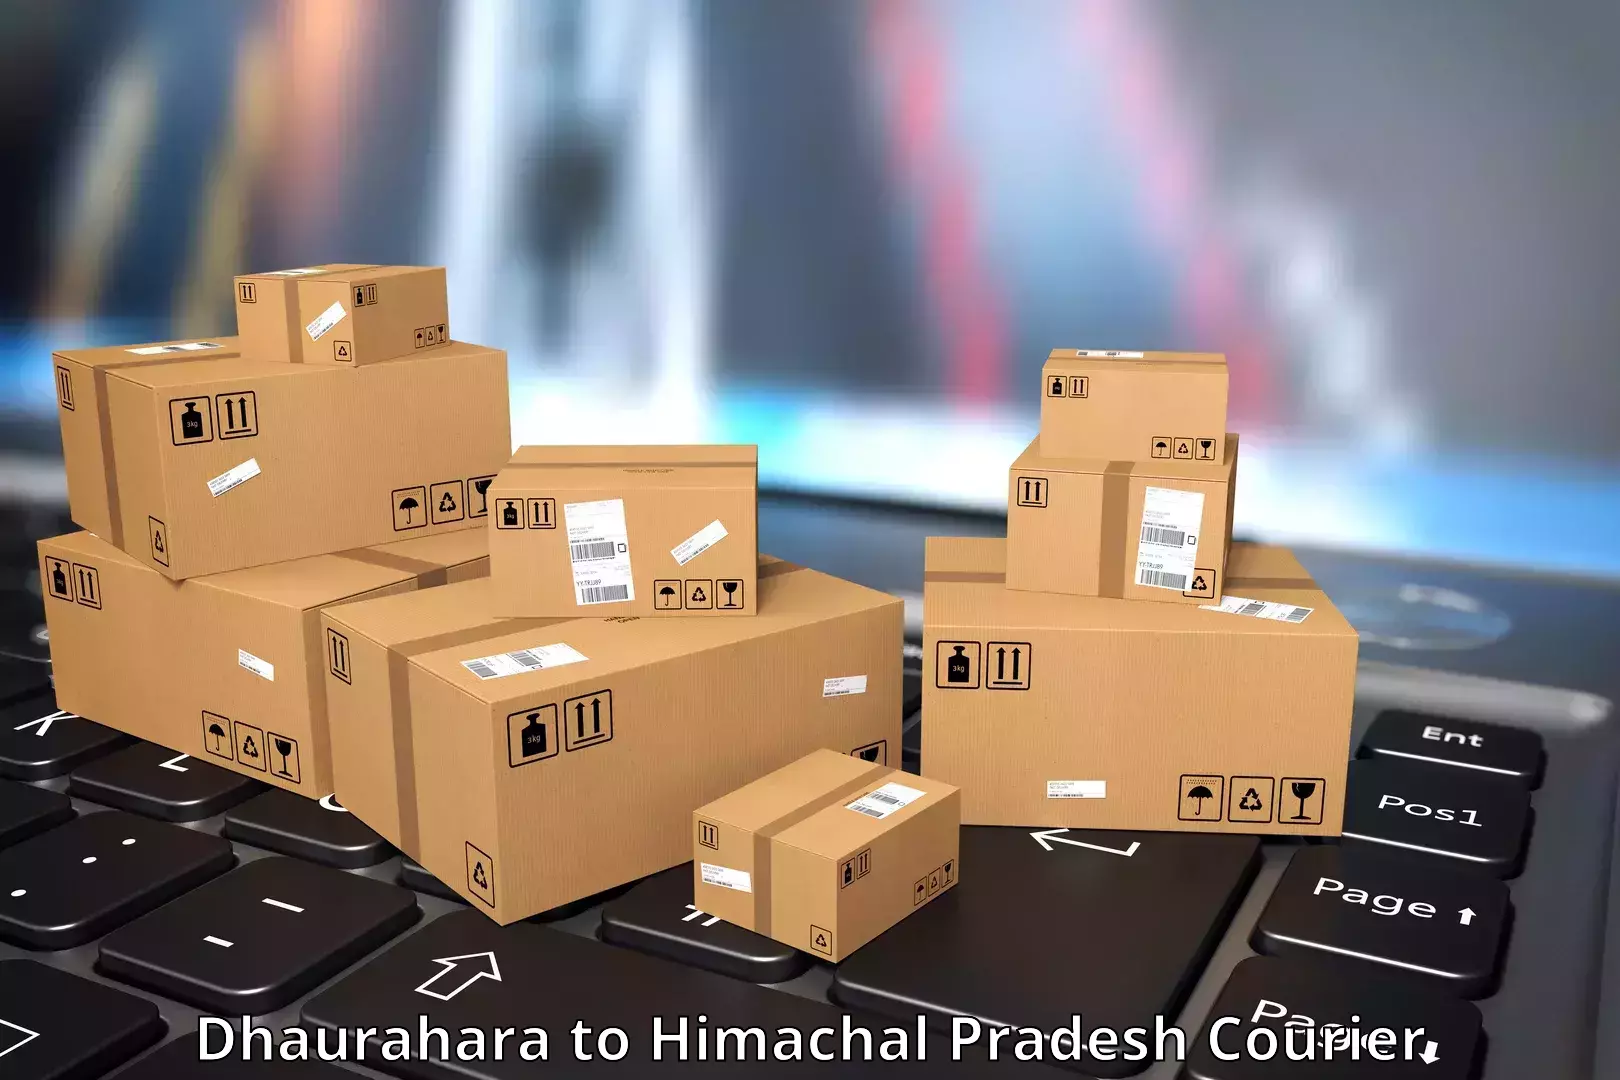 Customizable shipping options Dhaurahara to Dheera